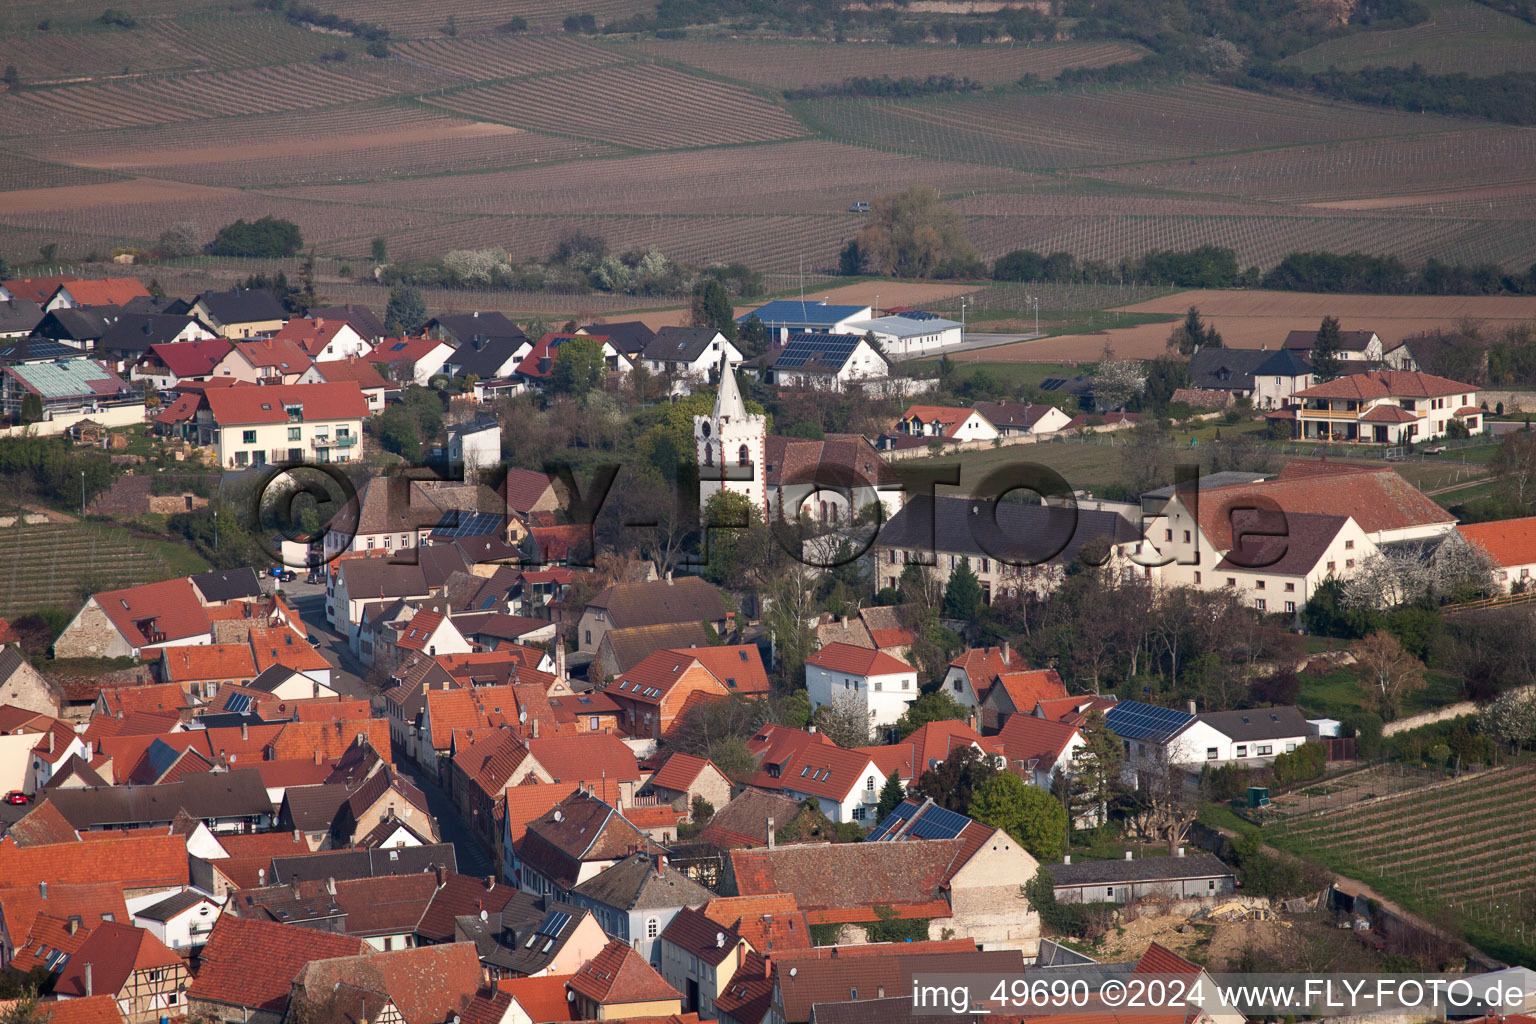 Vue des rues et des maisons des quartiers résidentiels à Bockenheim an der Weinstraße dans le département Rhénanie-Palatinat, Allemagne d'en haut